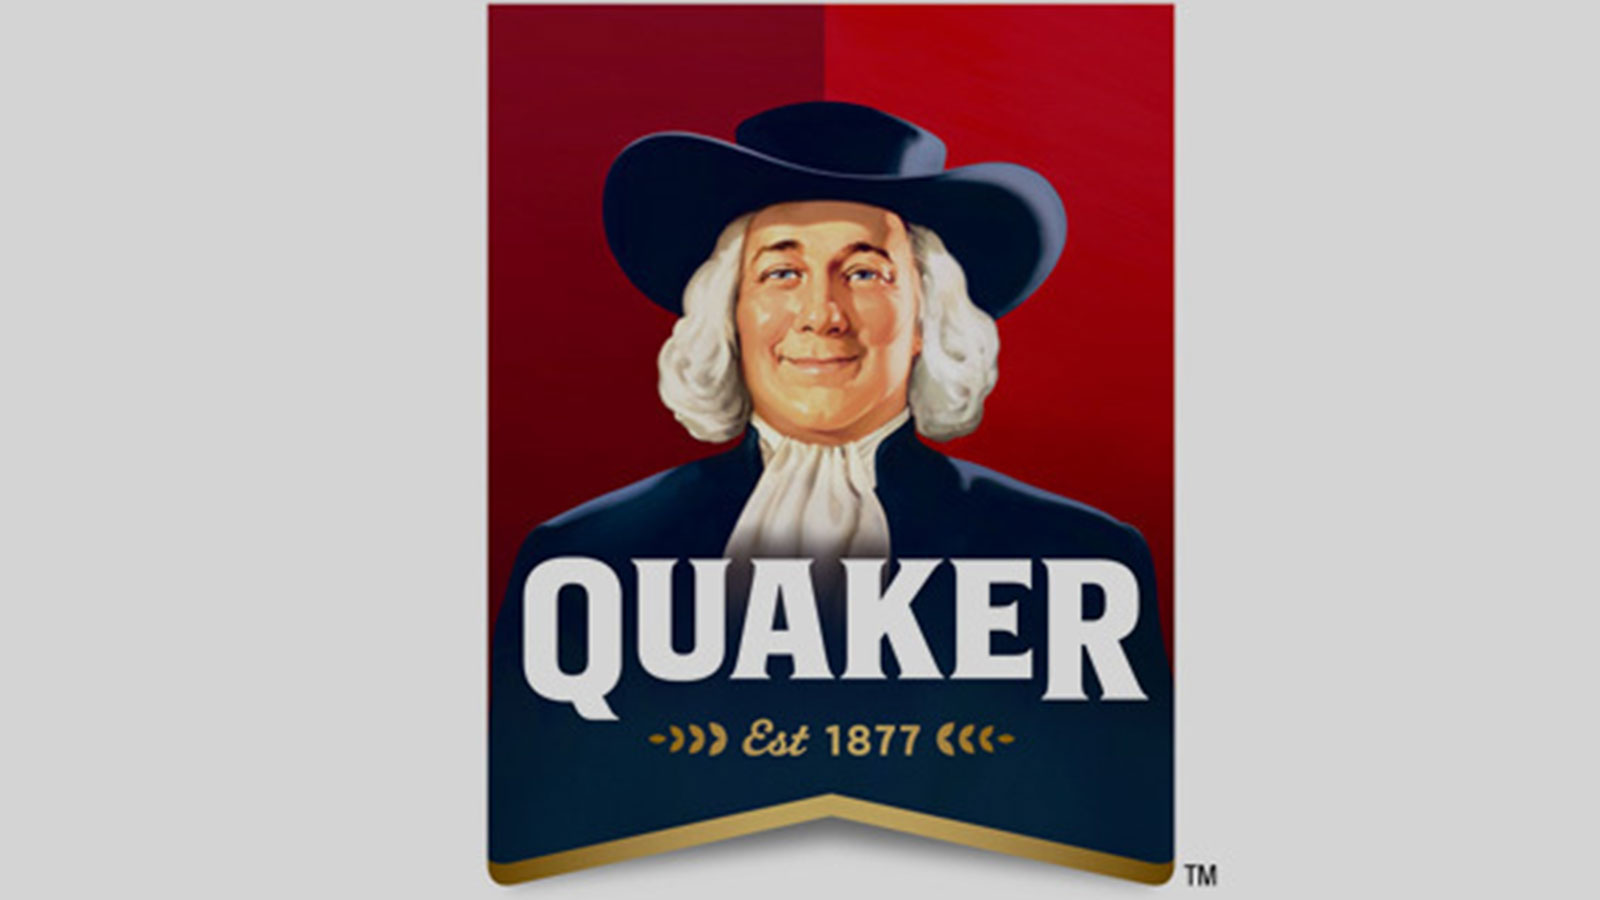 Quaker Image